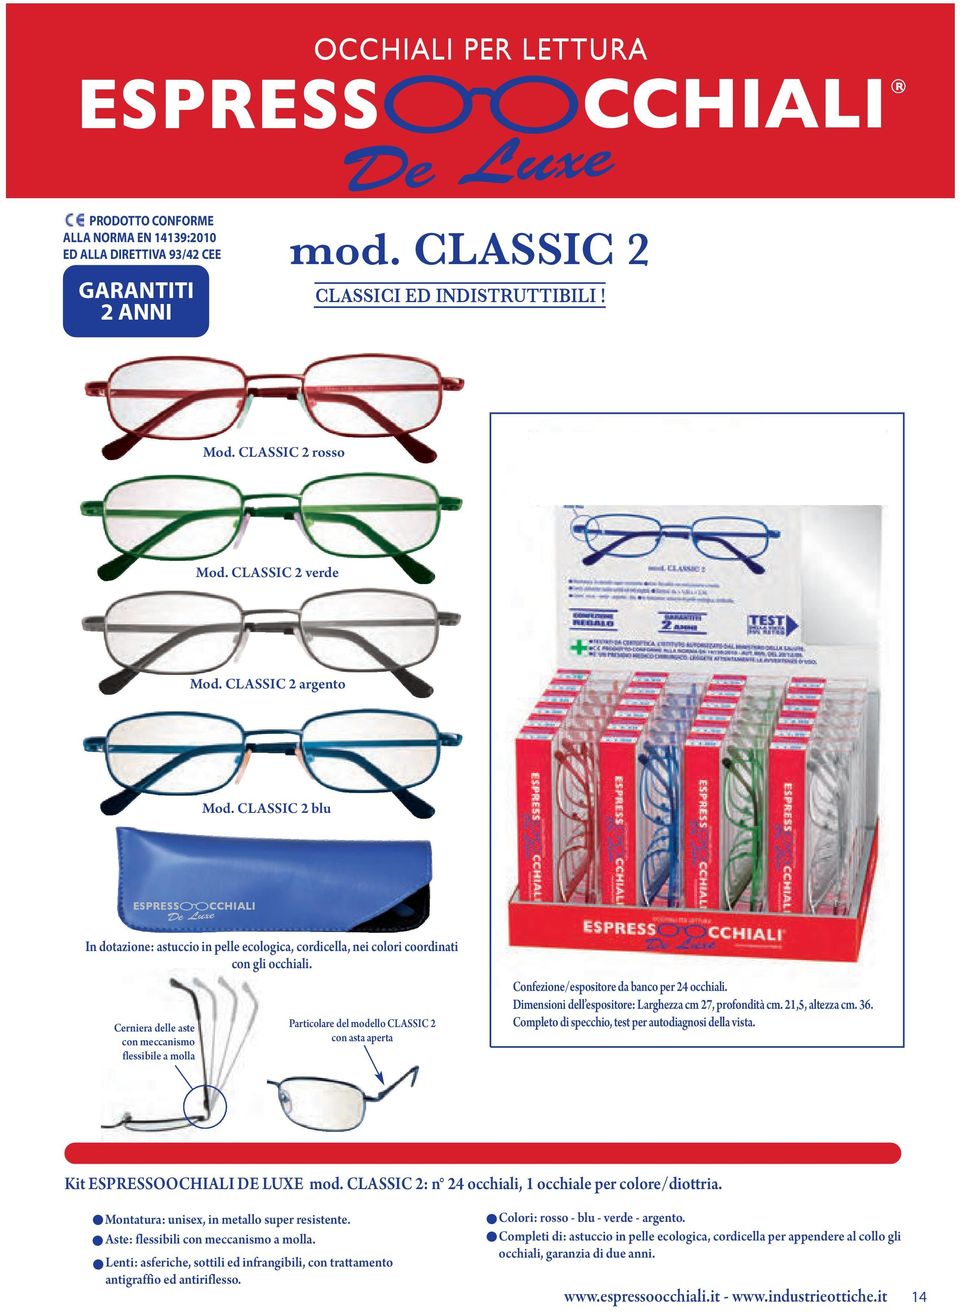 Cerniera delle aste con meccanismo flessibile a molla Particolare del modello CLASSIC 2 con asta aperta Confezione/espositore da banco per 24 occhiali.